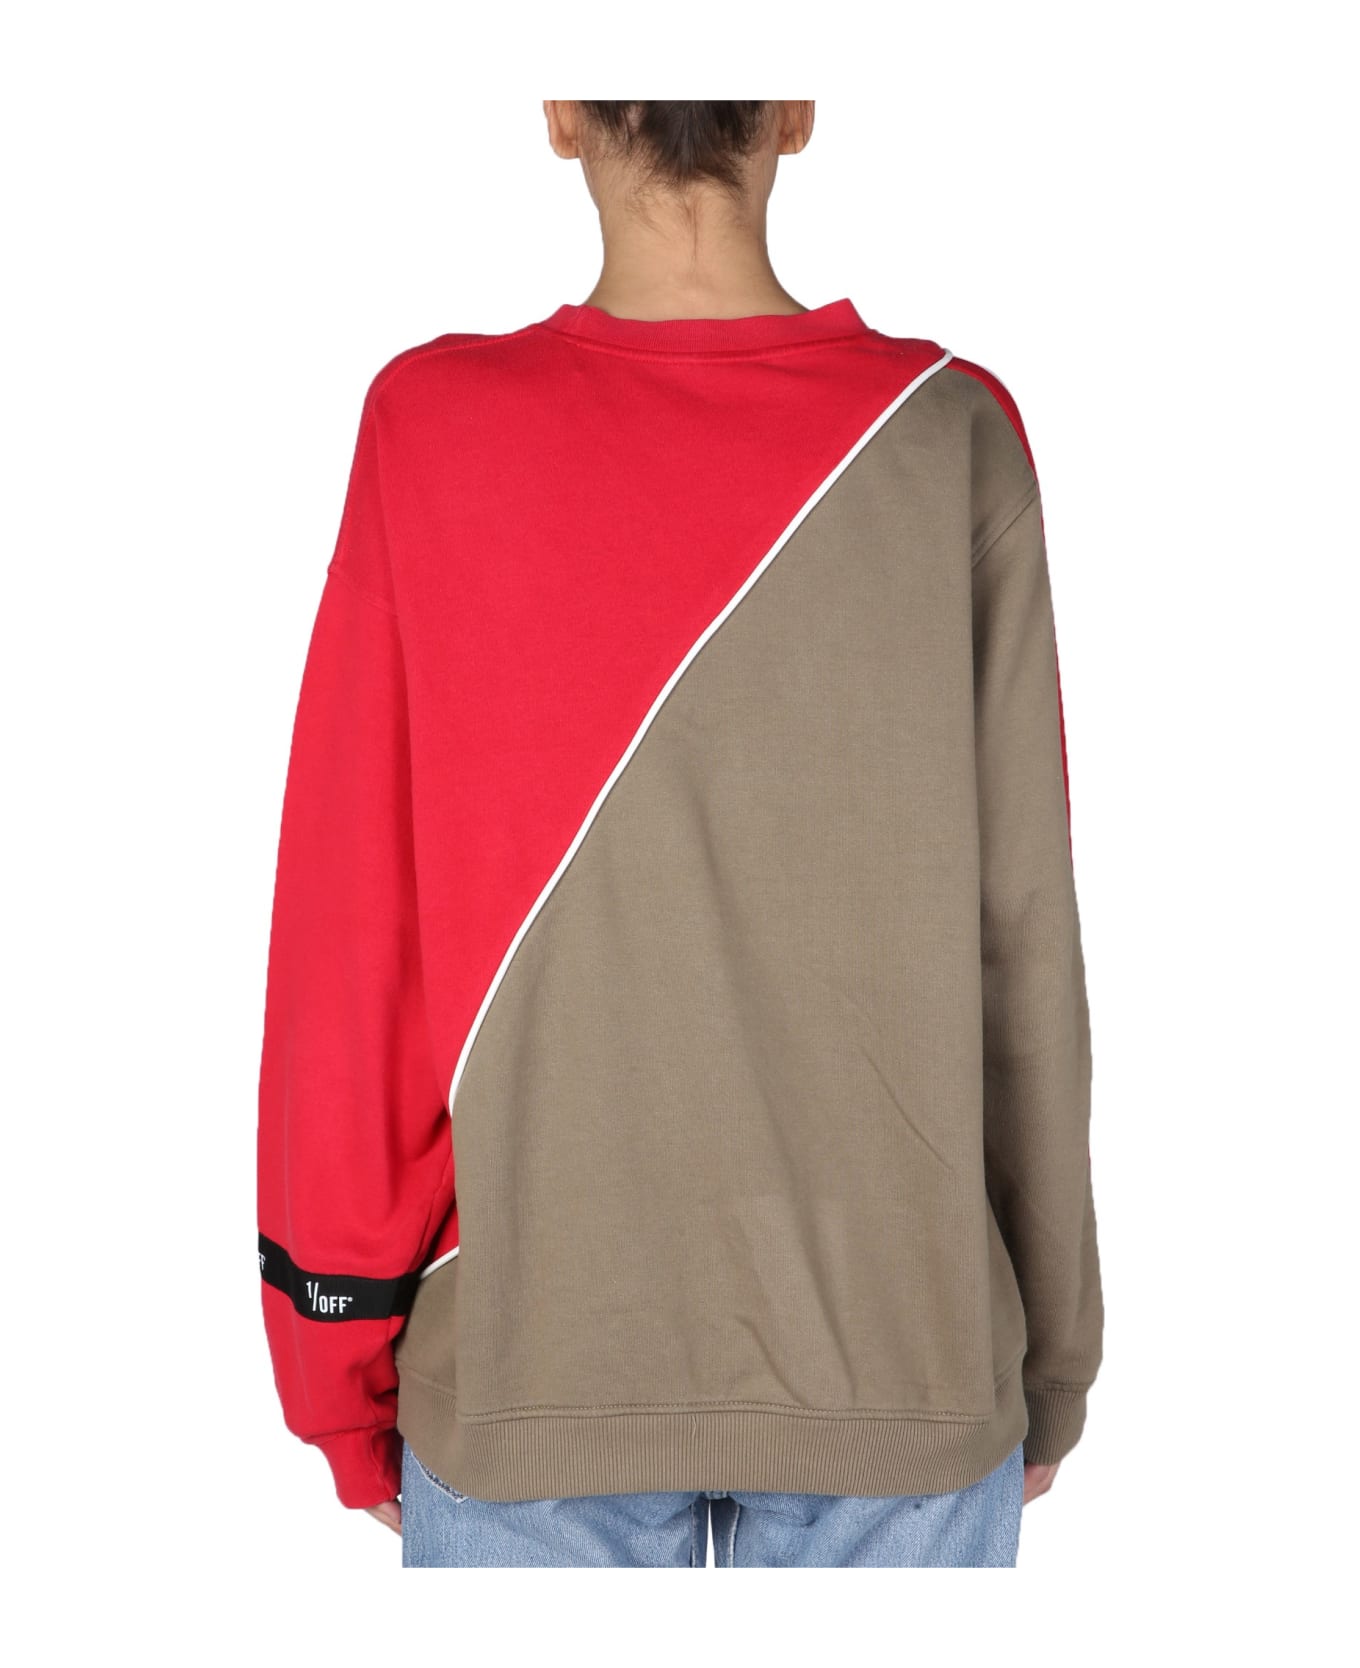 1/OFF Hybrid Sweatshirt - MULTICOLOR